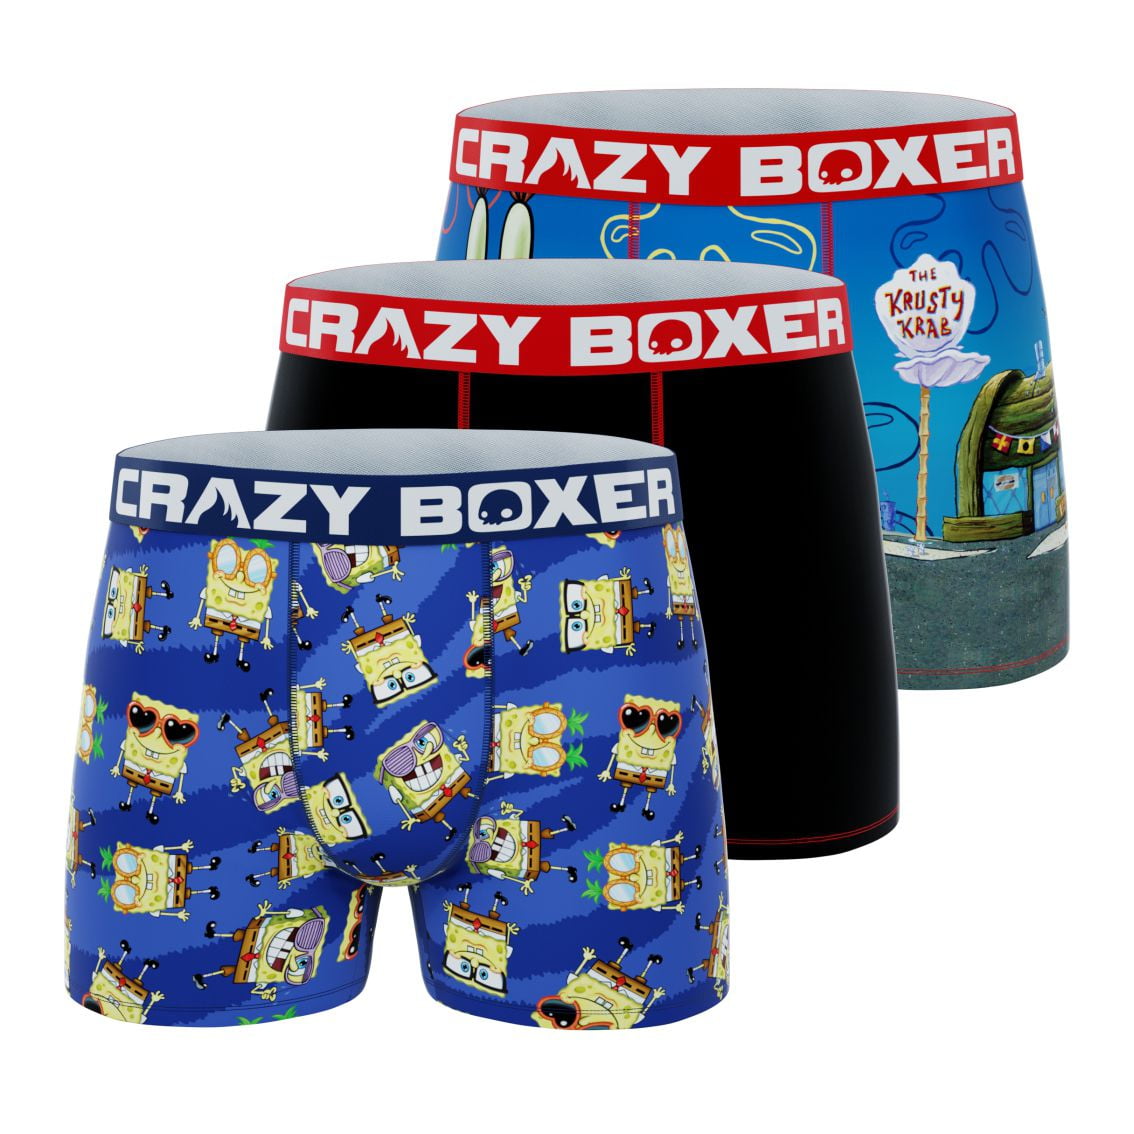 CRAZYBOXER Men's Underwear Spongebob Squarepants Distortion-free